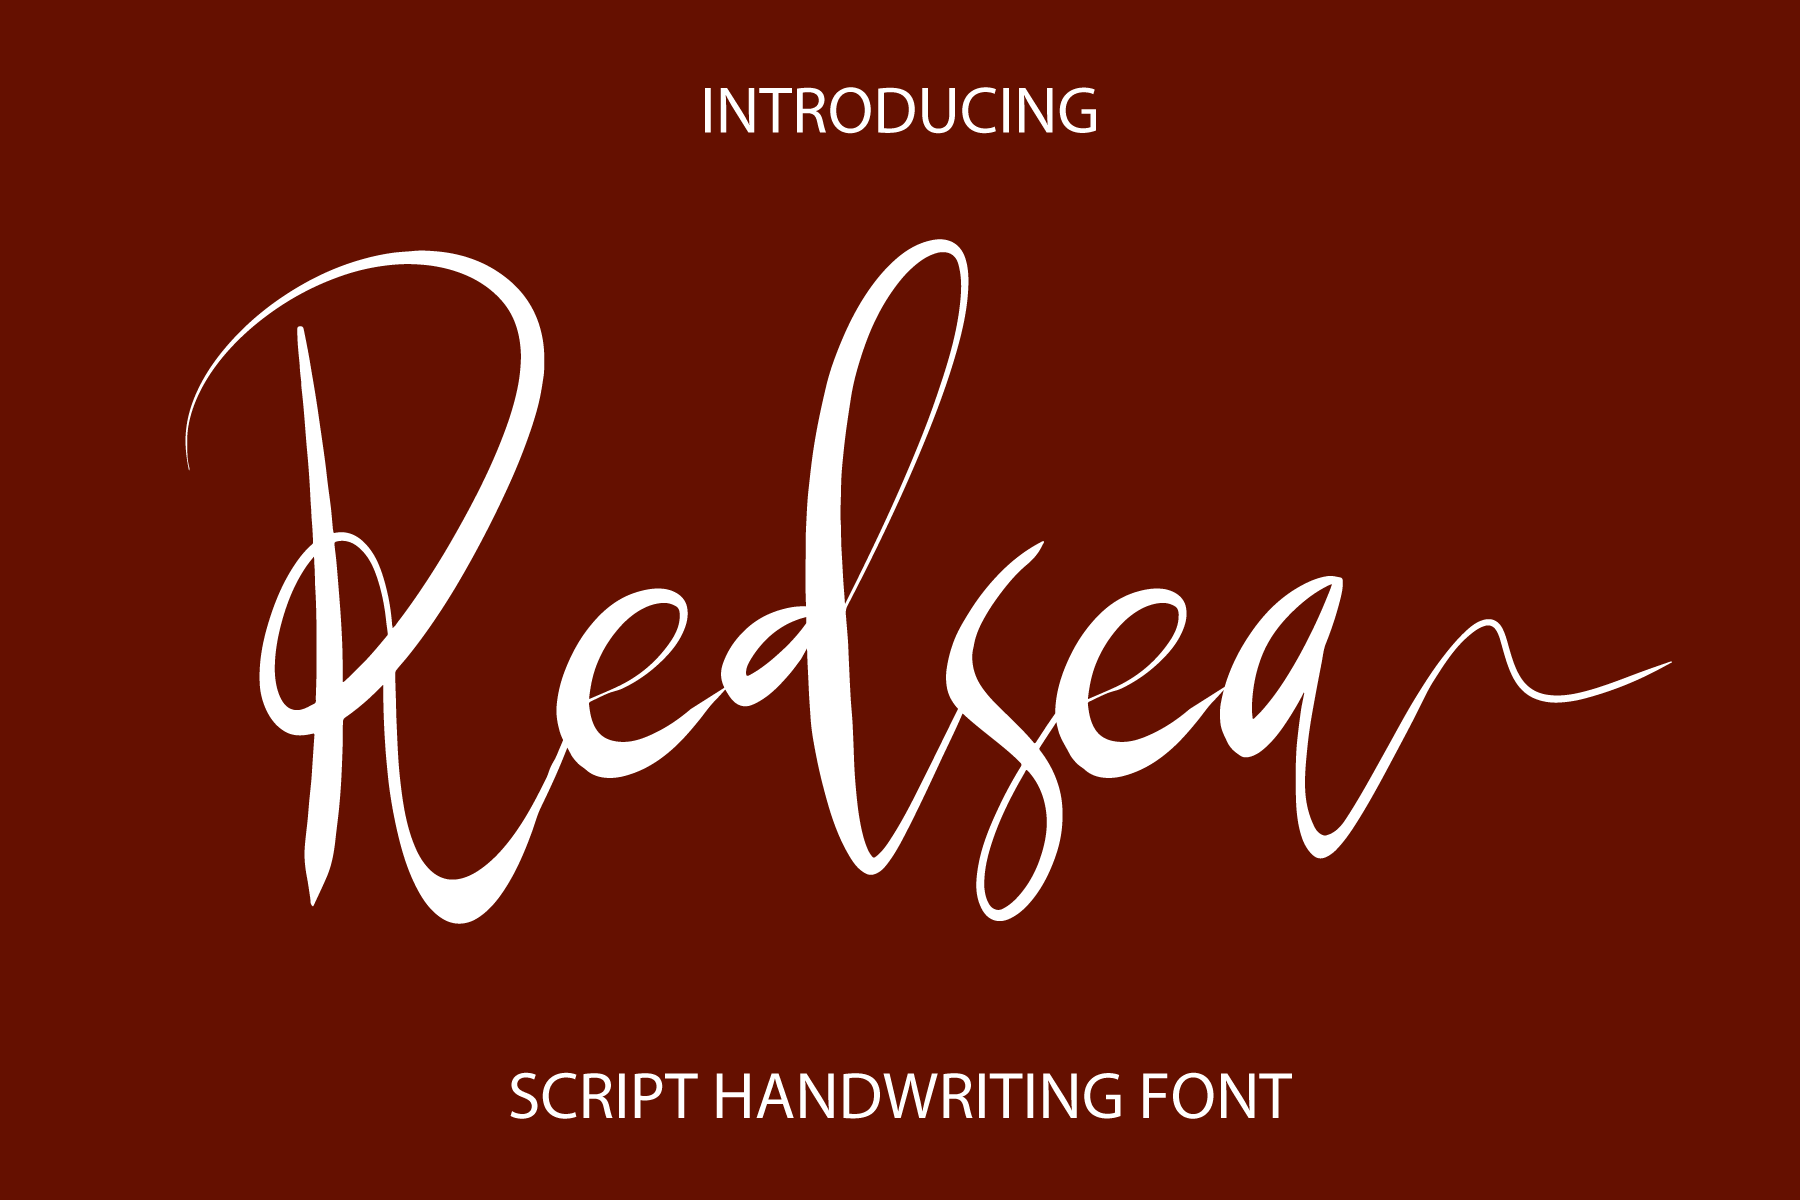 Redsea Script Font